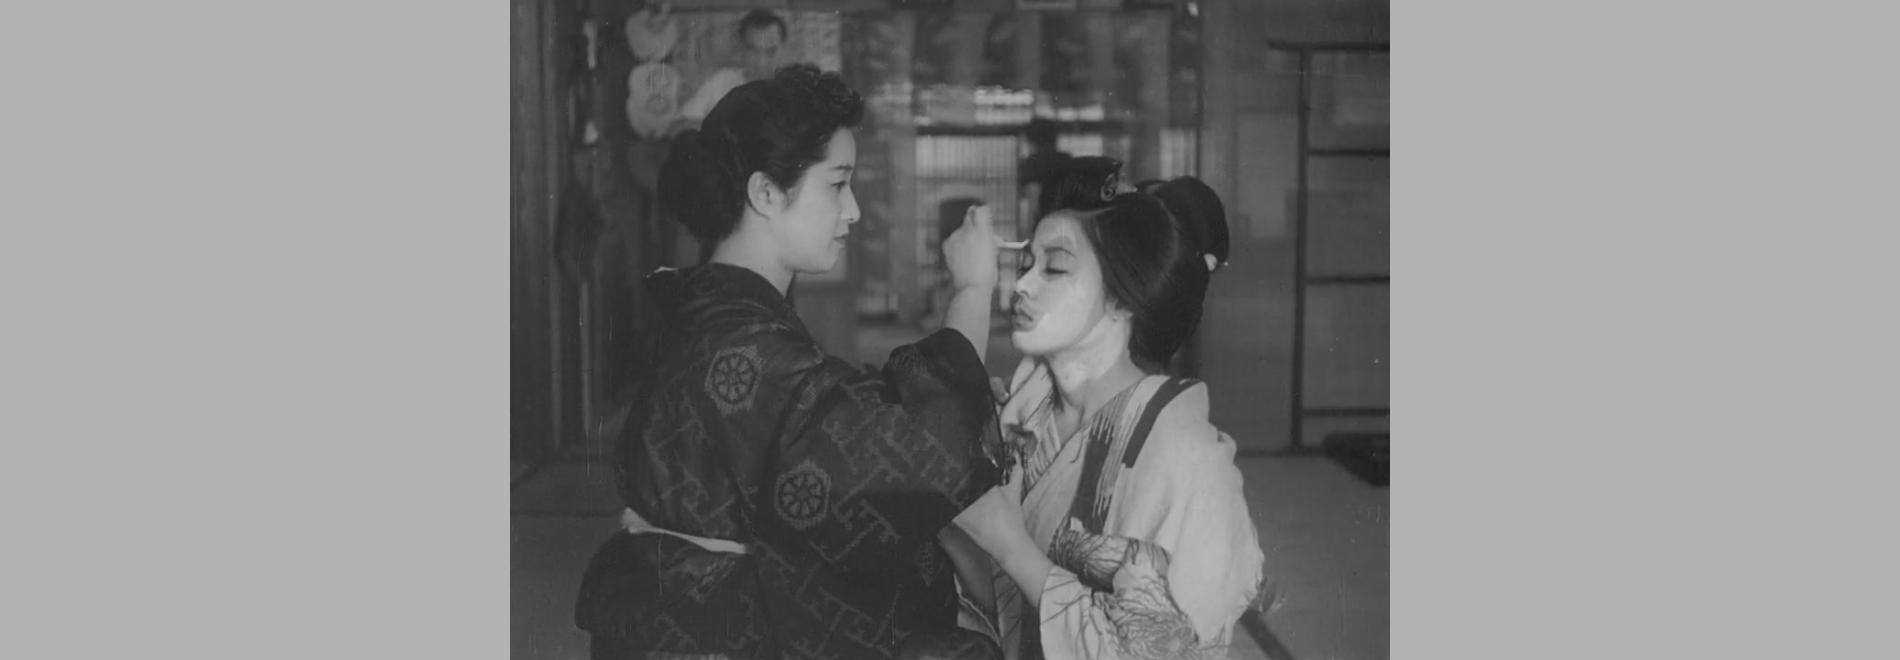 Gion bayashi / La música de Gion (Kenji Mizoguchi, 1953)